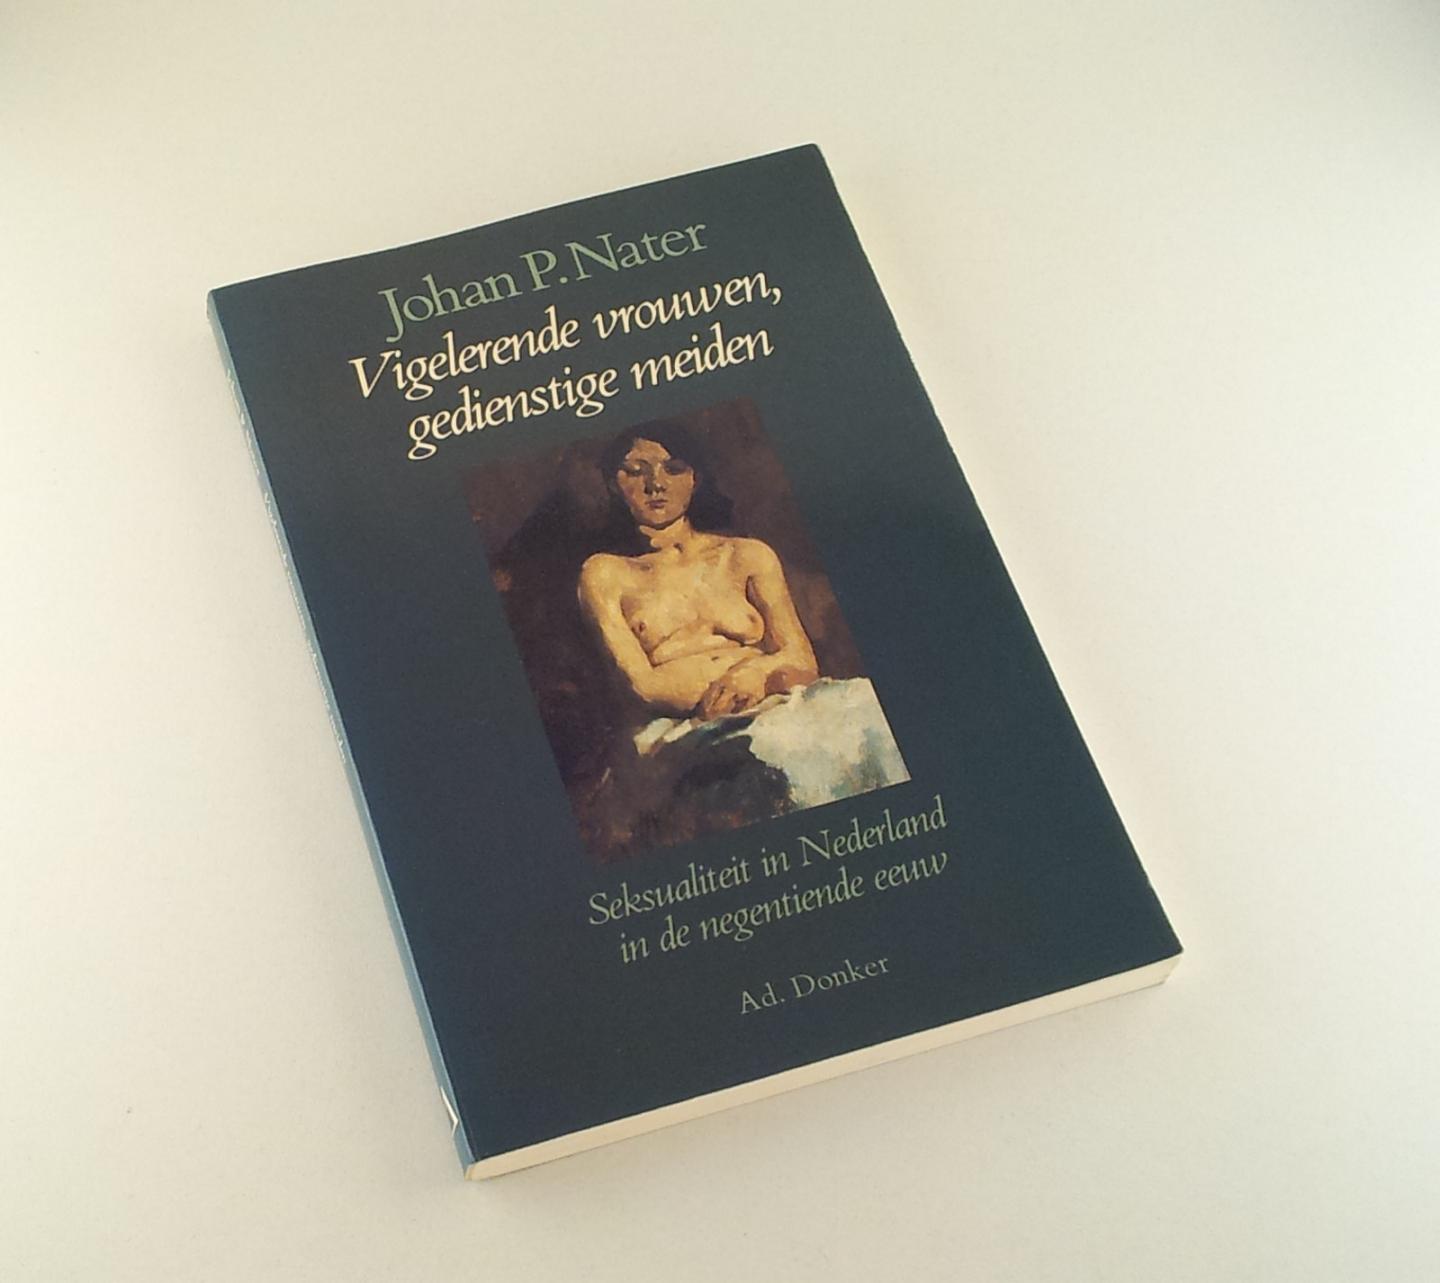 Nater, Johan P. - Vigelerende vrouwen, gedienstige meiden / Seksualiteit in Nederland in de negentiende eeuw